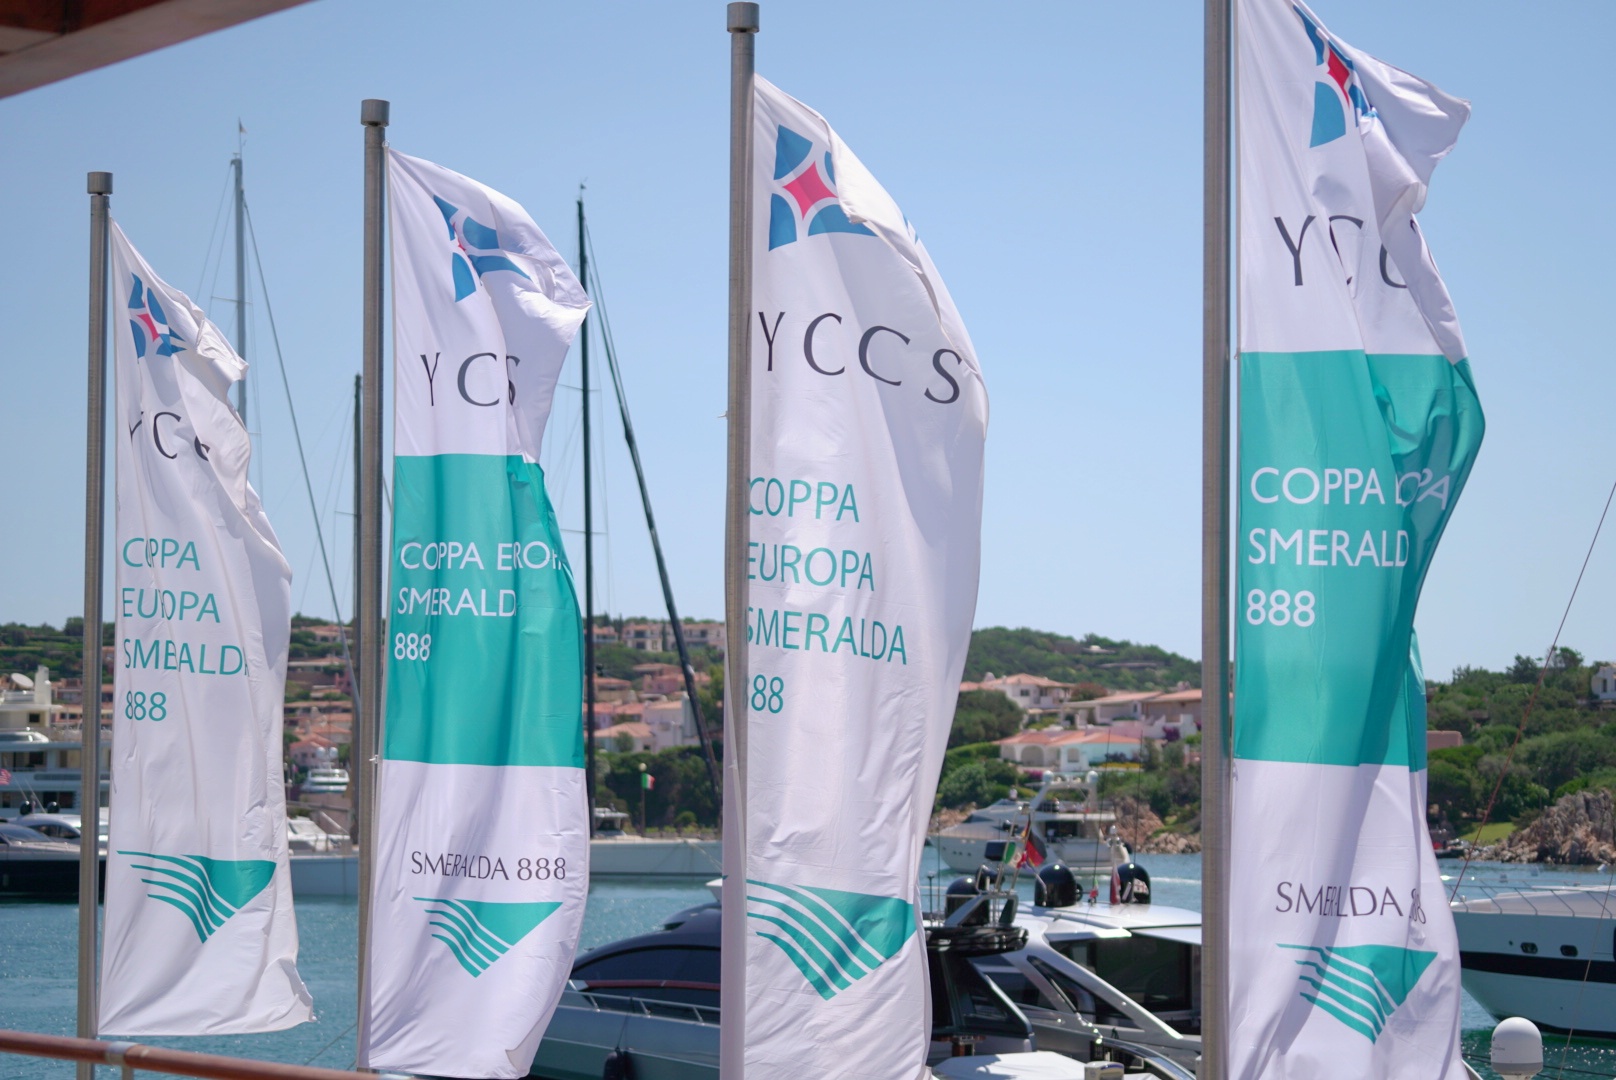 Al via oggi la 19^ edizione della Coppa Europa Smeralda 888 - Comunicati Stampa - Yacht Club Costa Smeralda